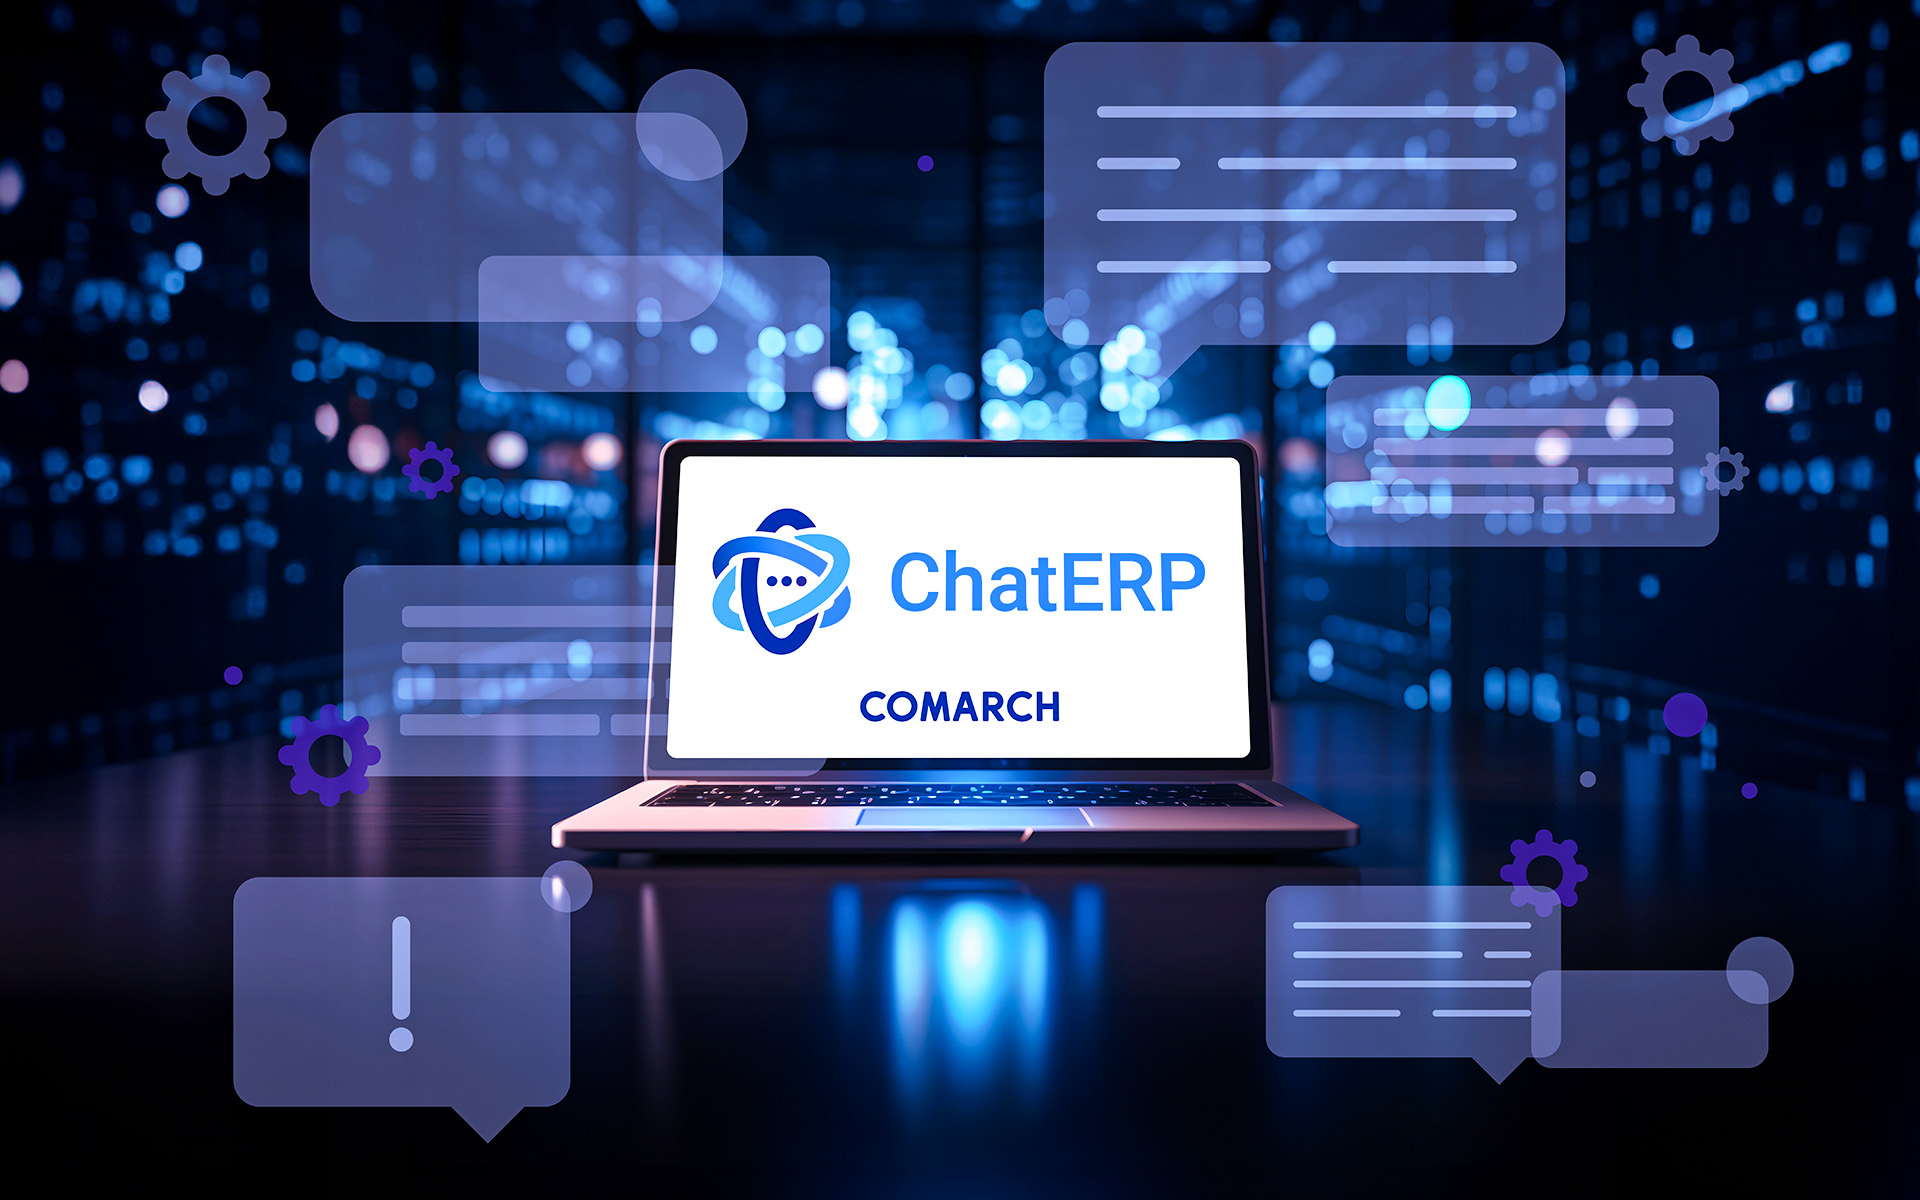 Inteligentny asystent od Comarch – ChatERP nowy wymiar wsparcia użytkownika